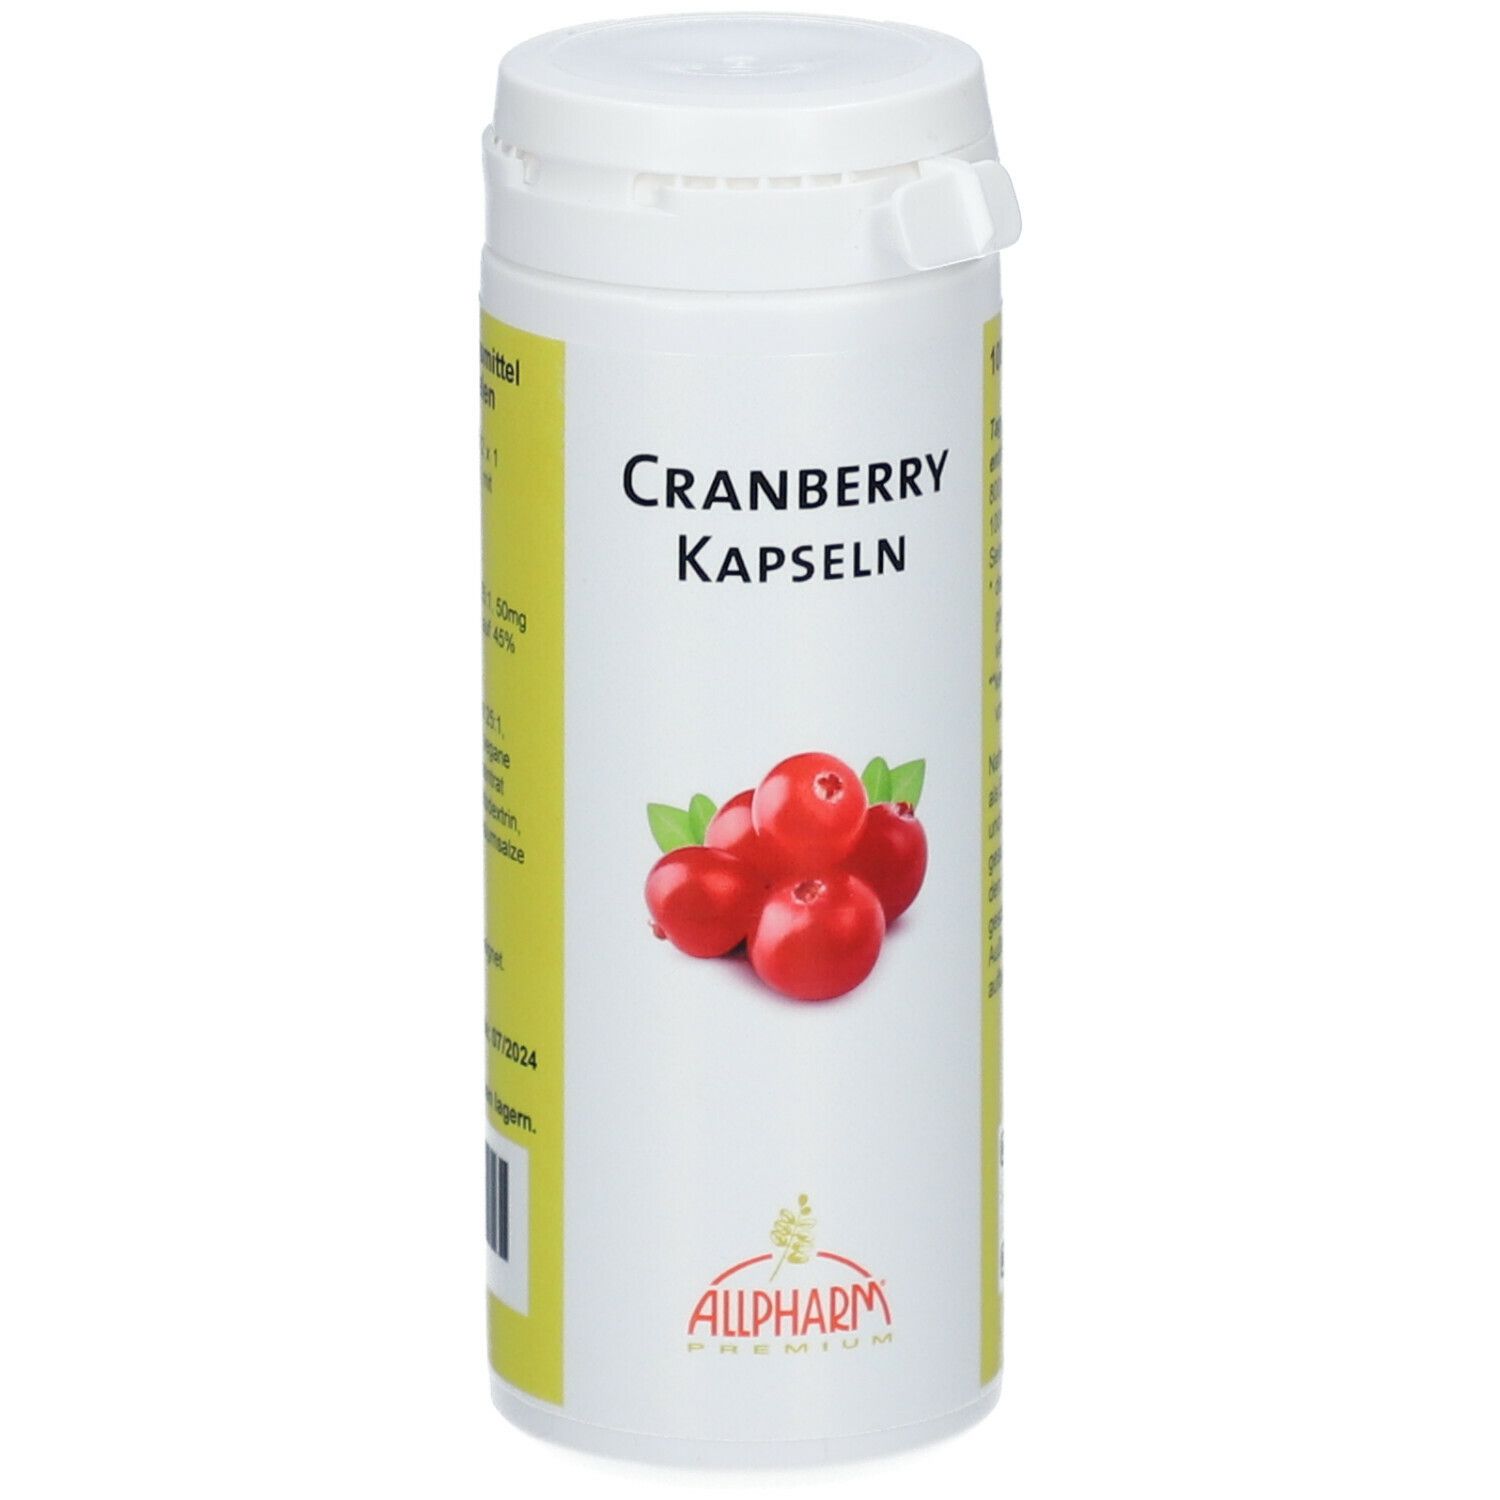 Cranberry capsules